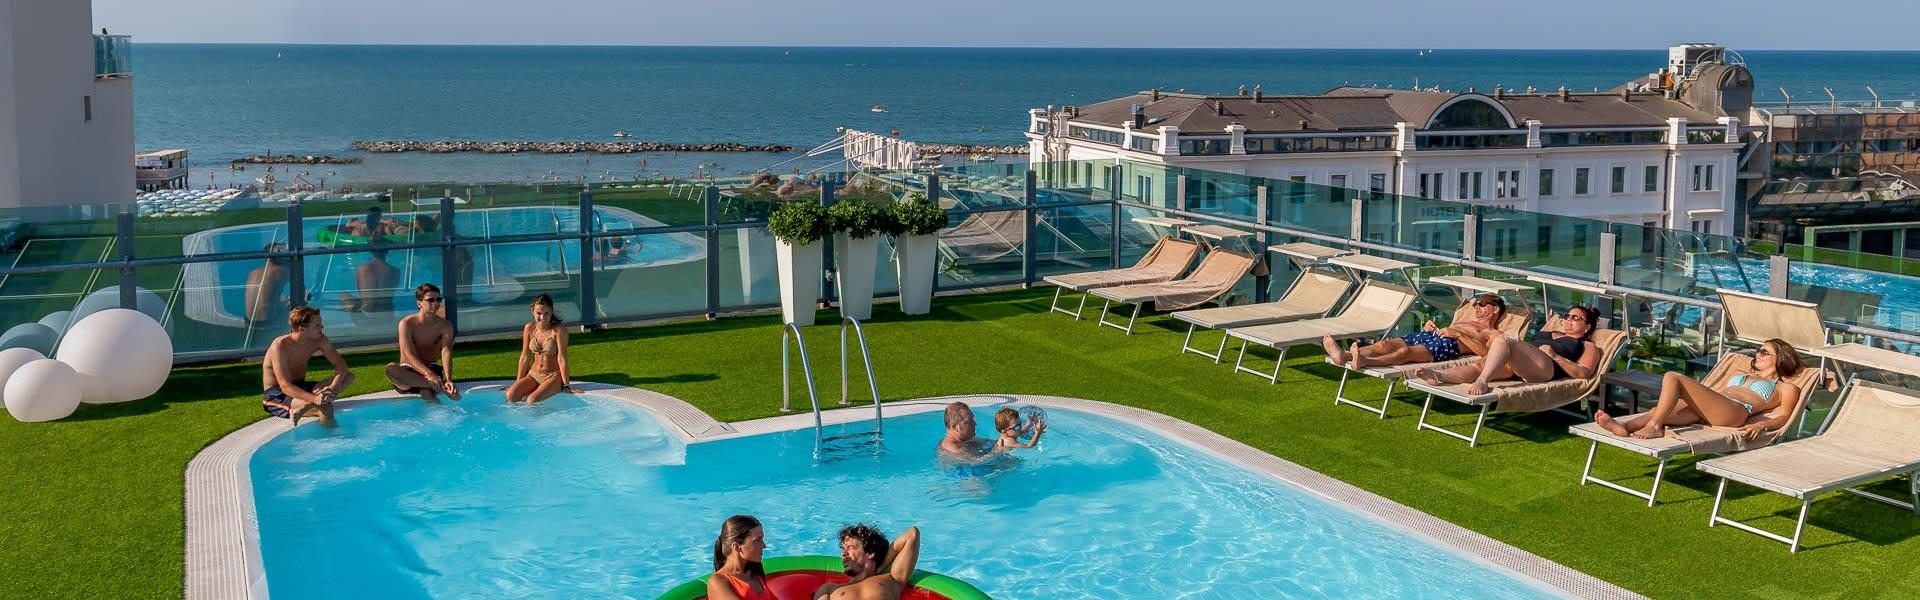 hotelsanmarcocattolica it offerta-speciale-vacanza-al-mare-fine-luglio-inizio-agosto-in-hotel-a-cattolica 003